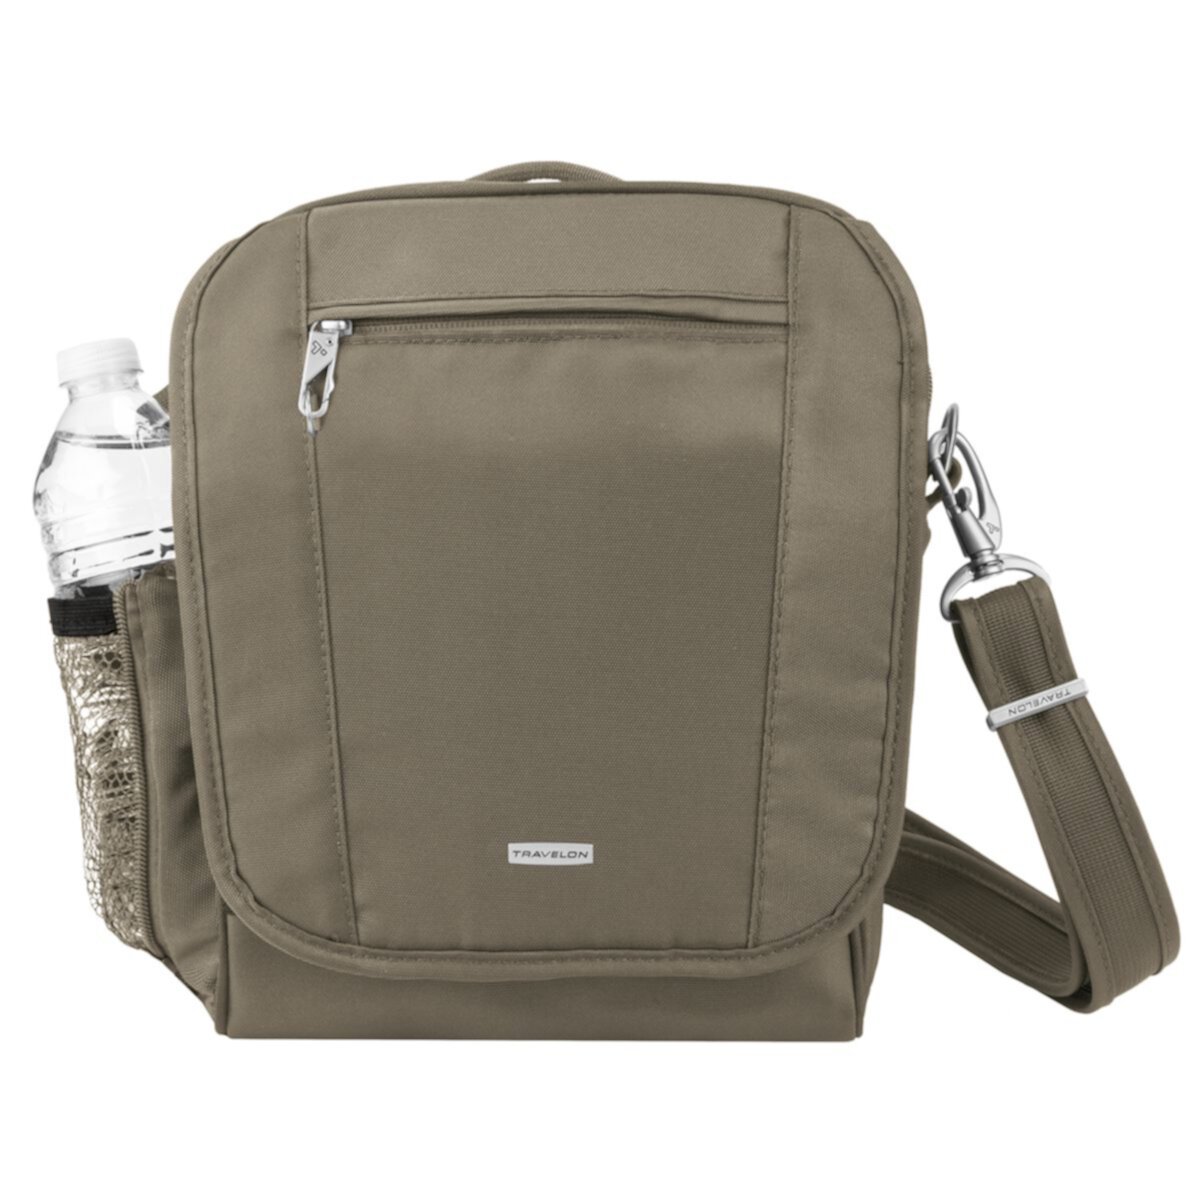 Туристическая сумка Travelon с защитой от кражи и боковым карманом Travelon